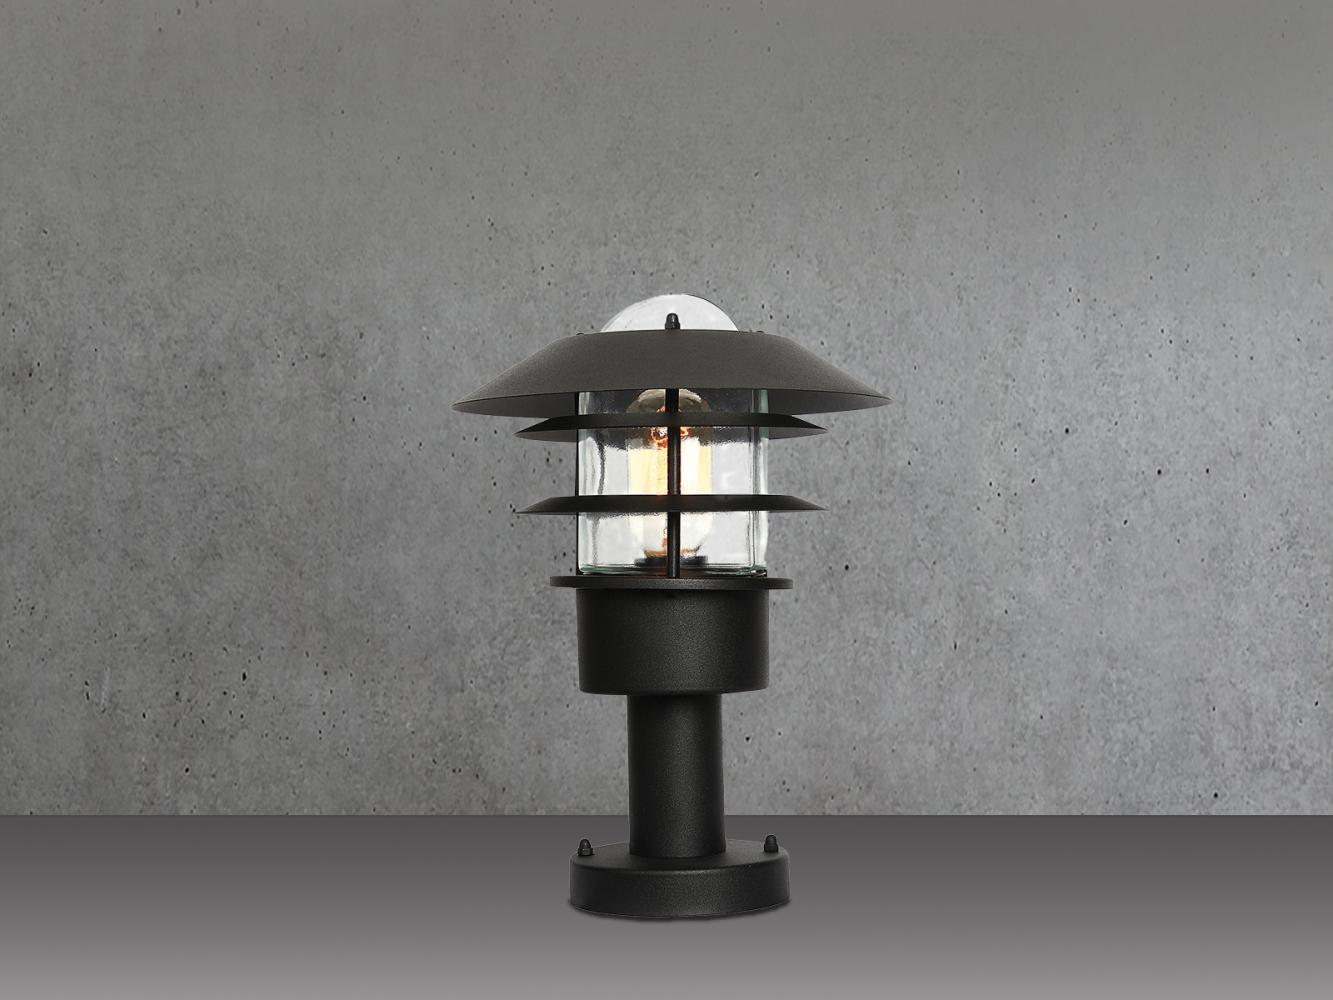 LED Wetterfeste Sockelleuchte aus Edelstahl, Schwarz Höhe 30,5cm Bild 1